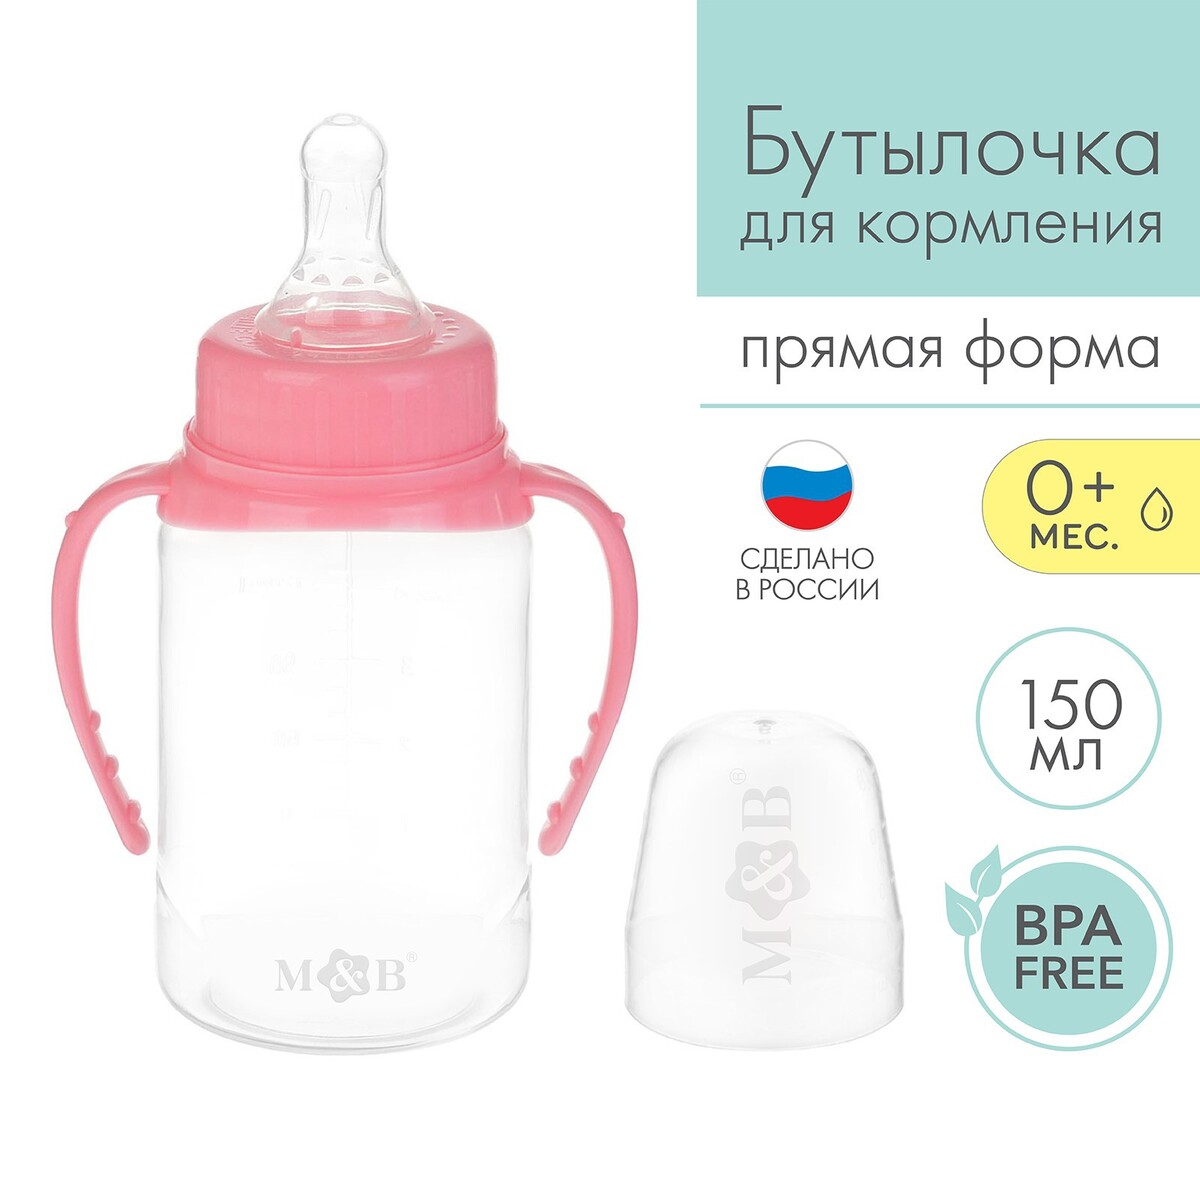 Бутылочка для кормления, классическое горло, с ручками, 150 мл., от 0 мес., цвет розовый бутылочка для кормления m